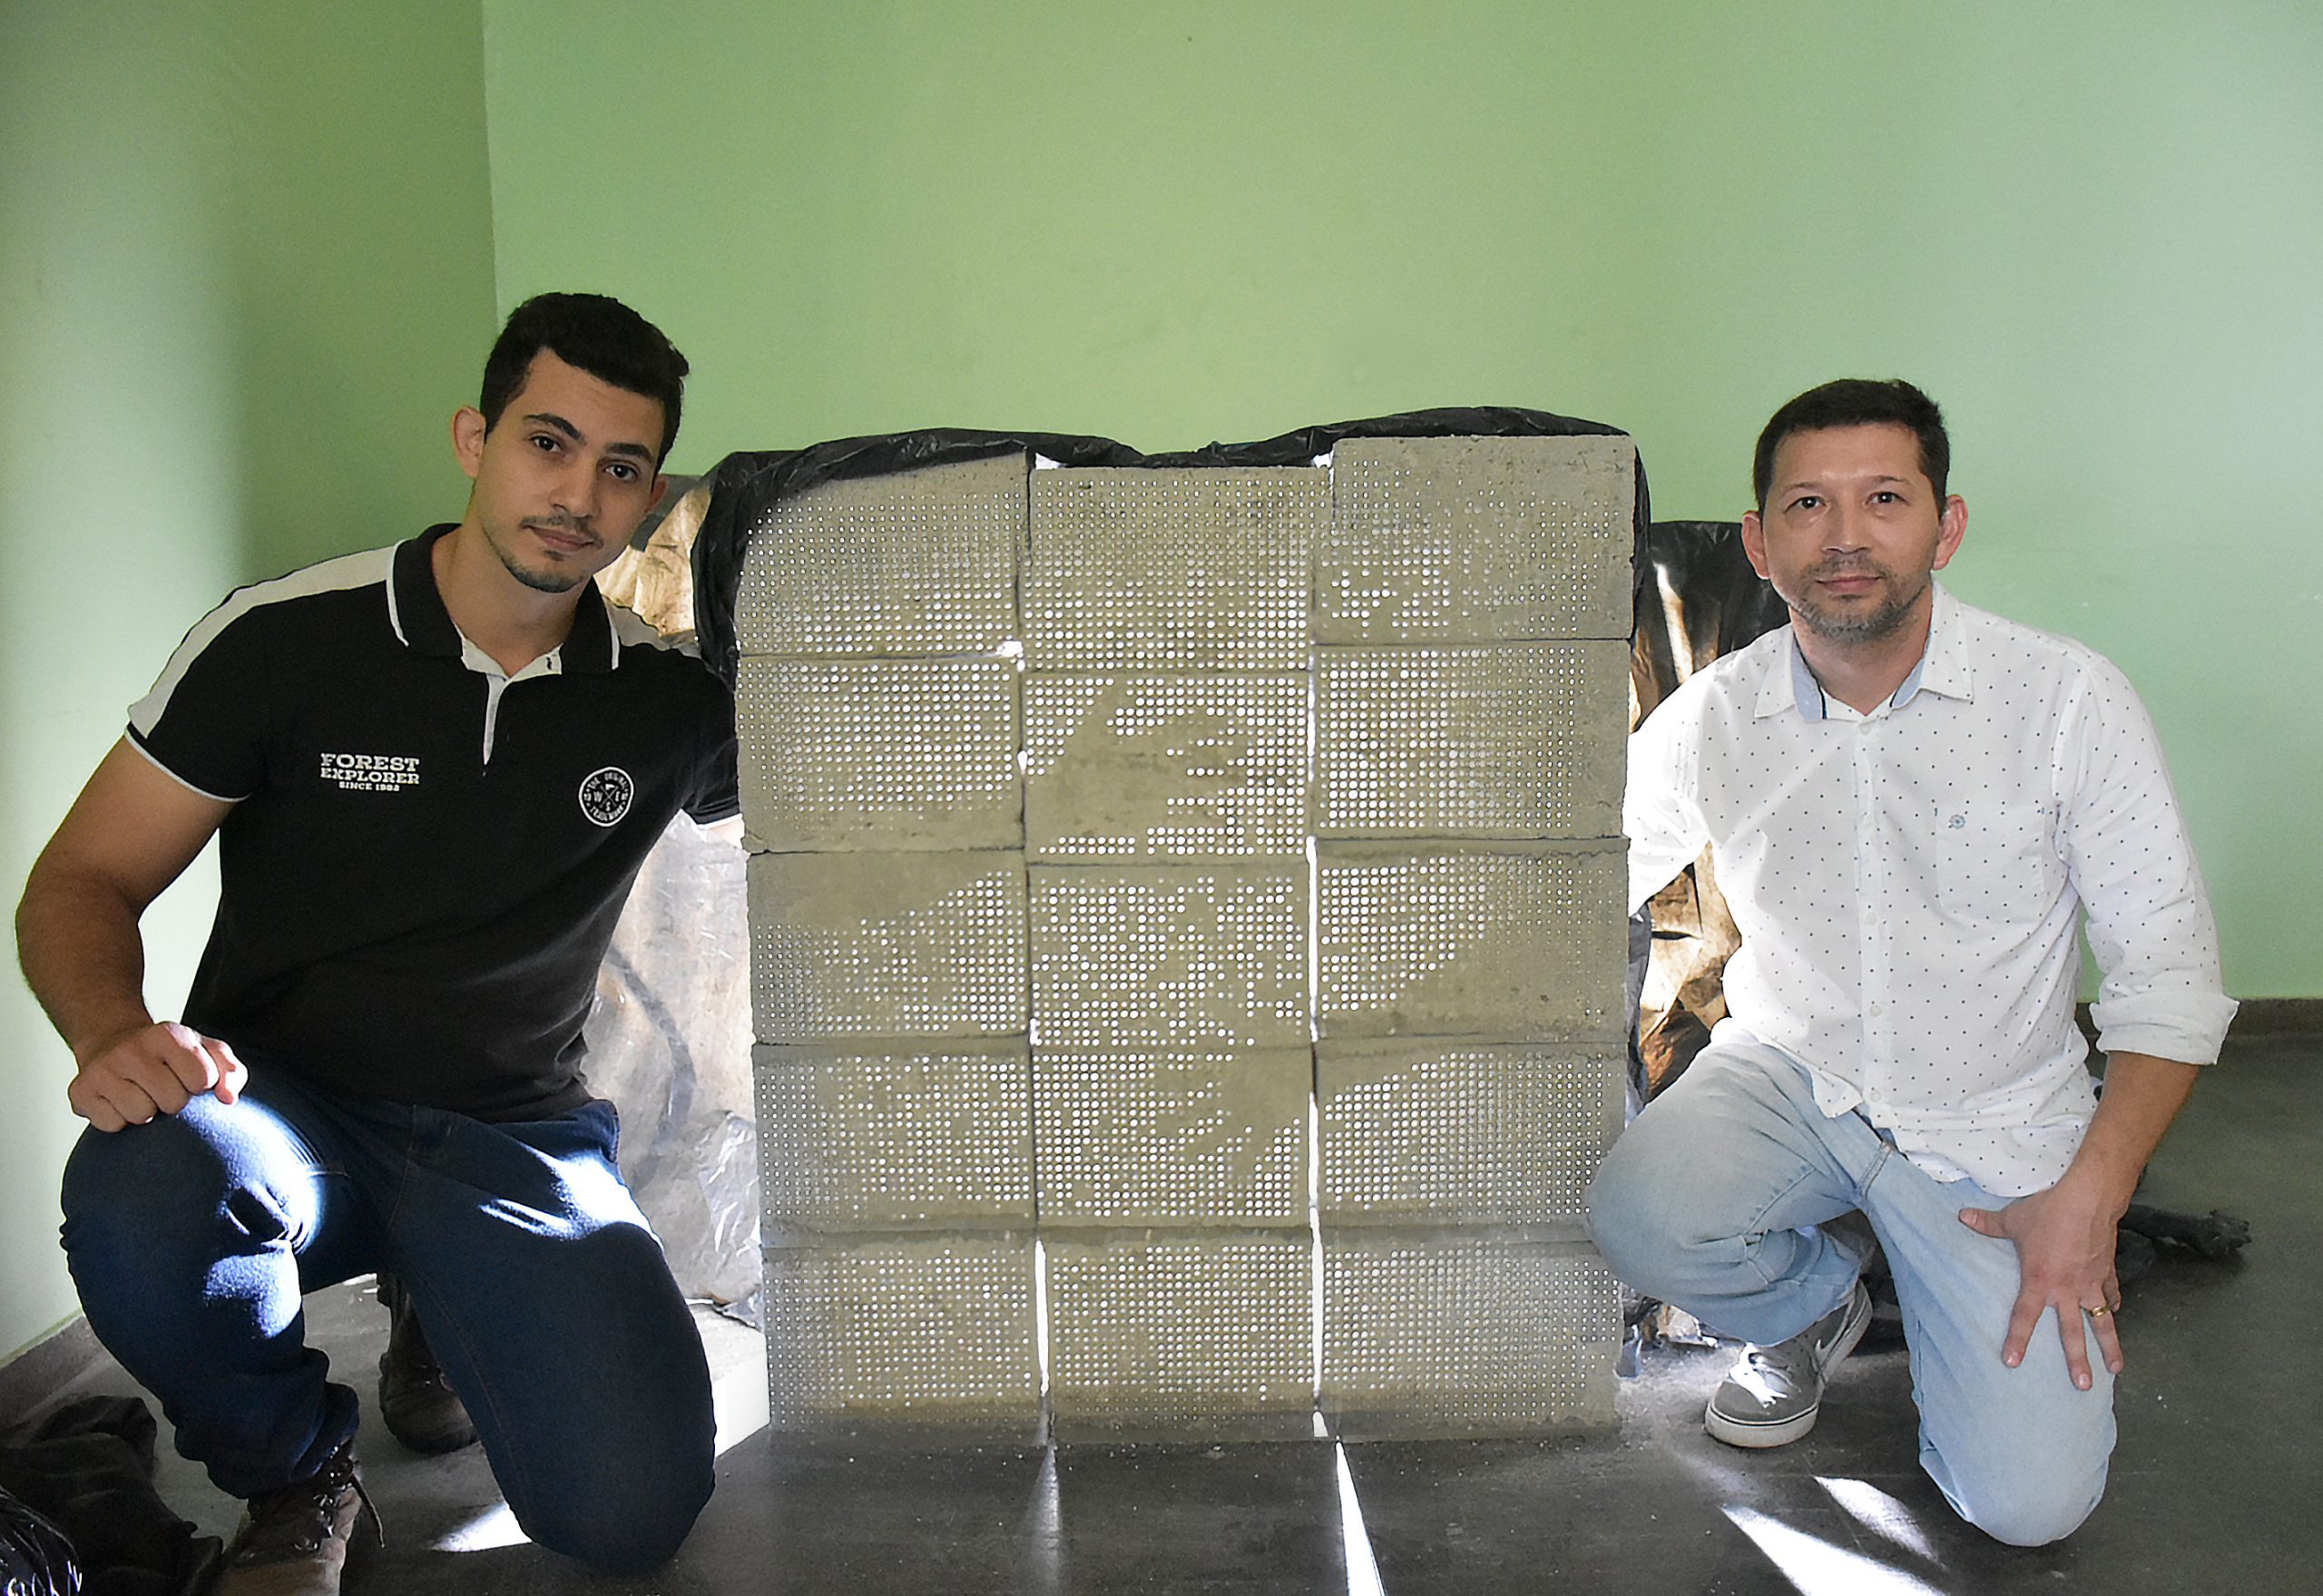 Decoração sustentável: conheça o concreto translúcido desenvolvido na UEA